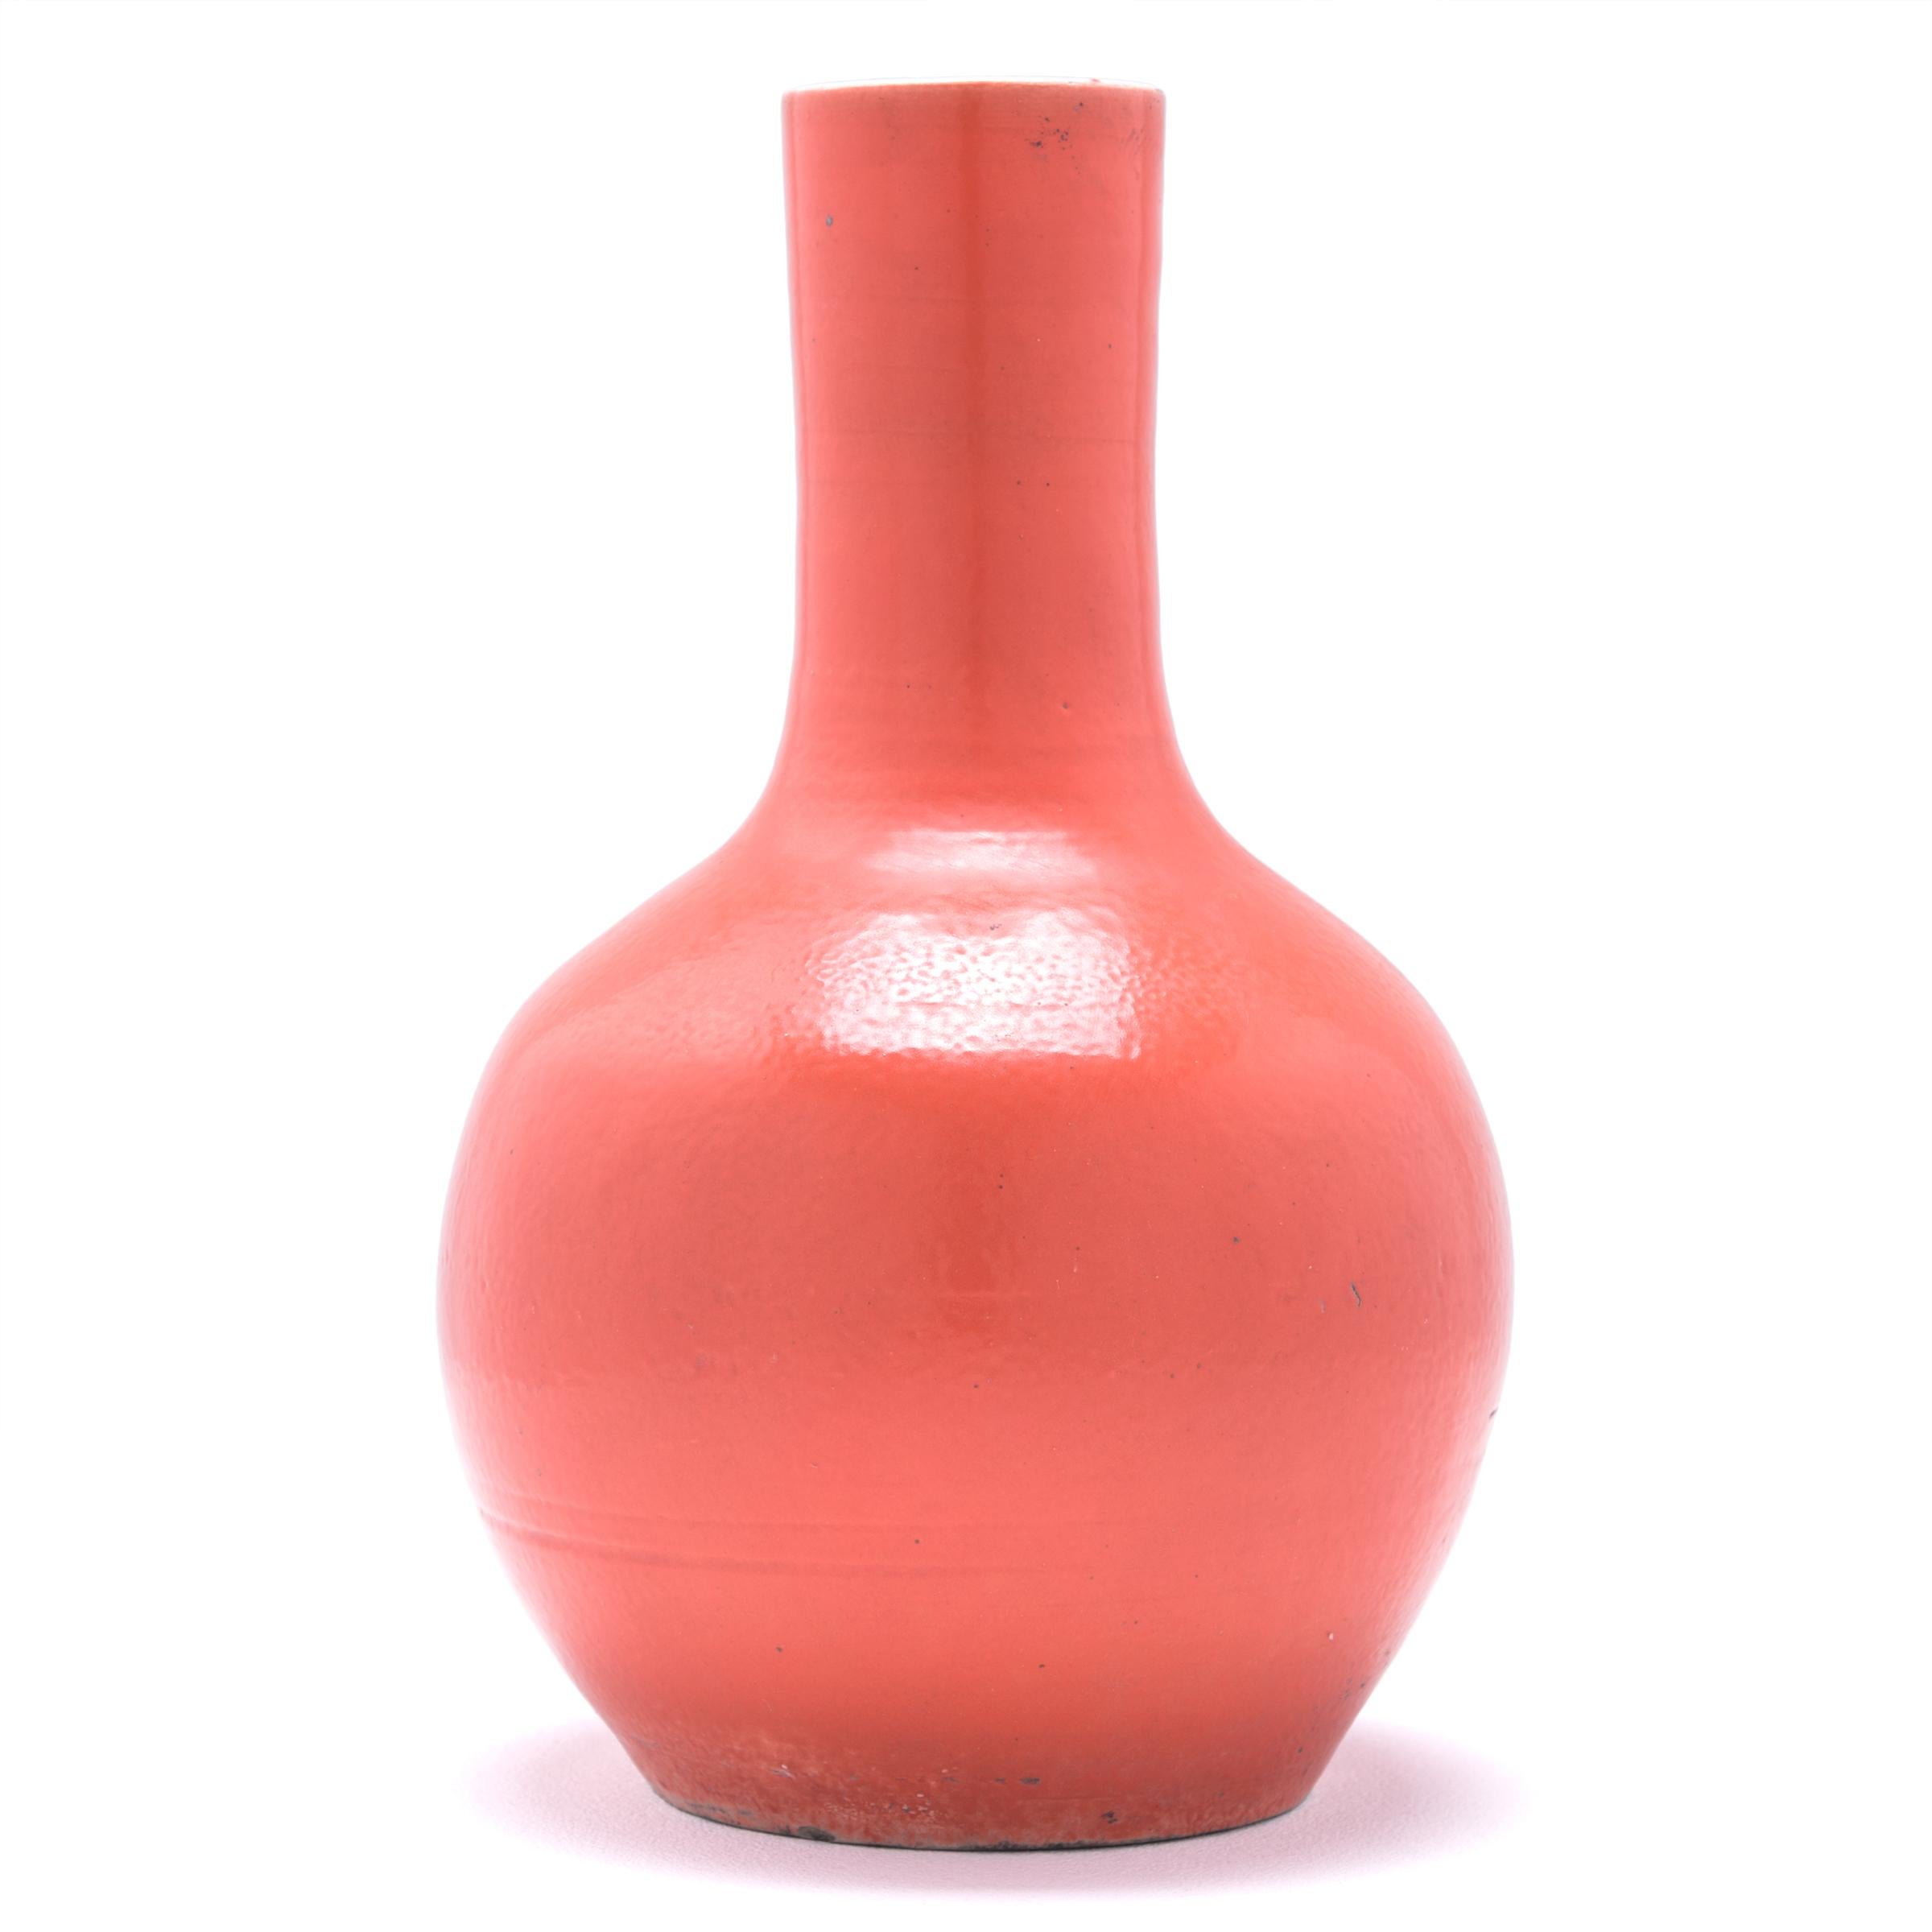 S'inspirant d'une longue tradition chinoise de céramiques monochromes, ce grand vase à col de cygne est recouvert d'une glaçure vibrante orange-persil. Le vase se caractérise par un corps arrondi et globulaire et un col cylindrique étroit, une forme